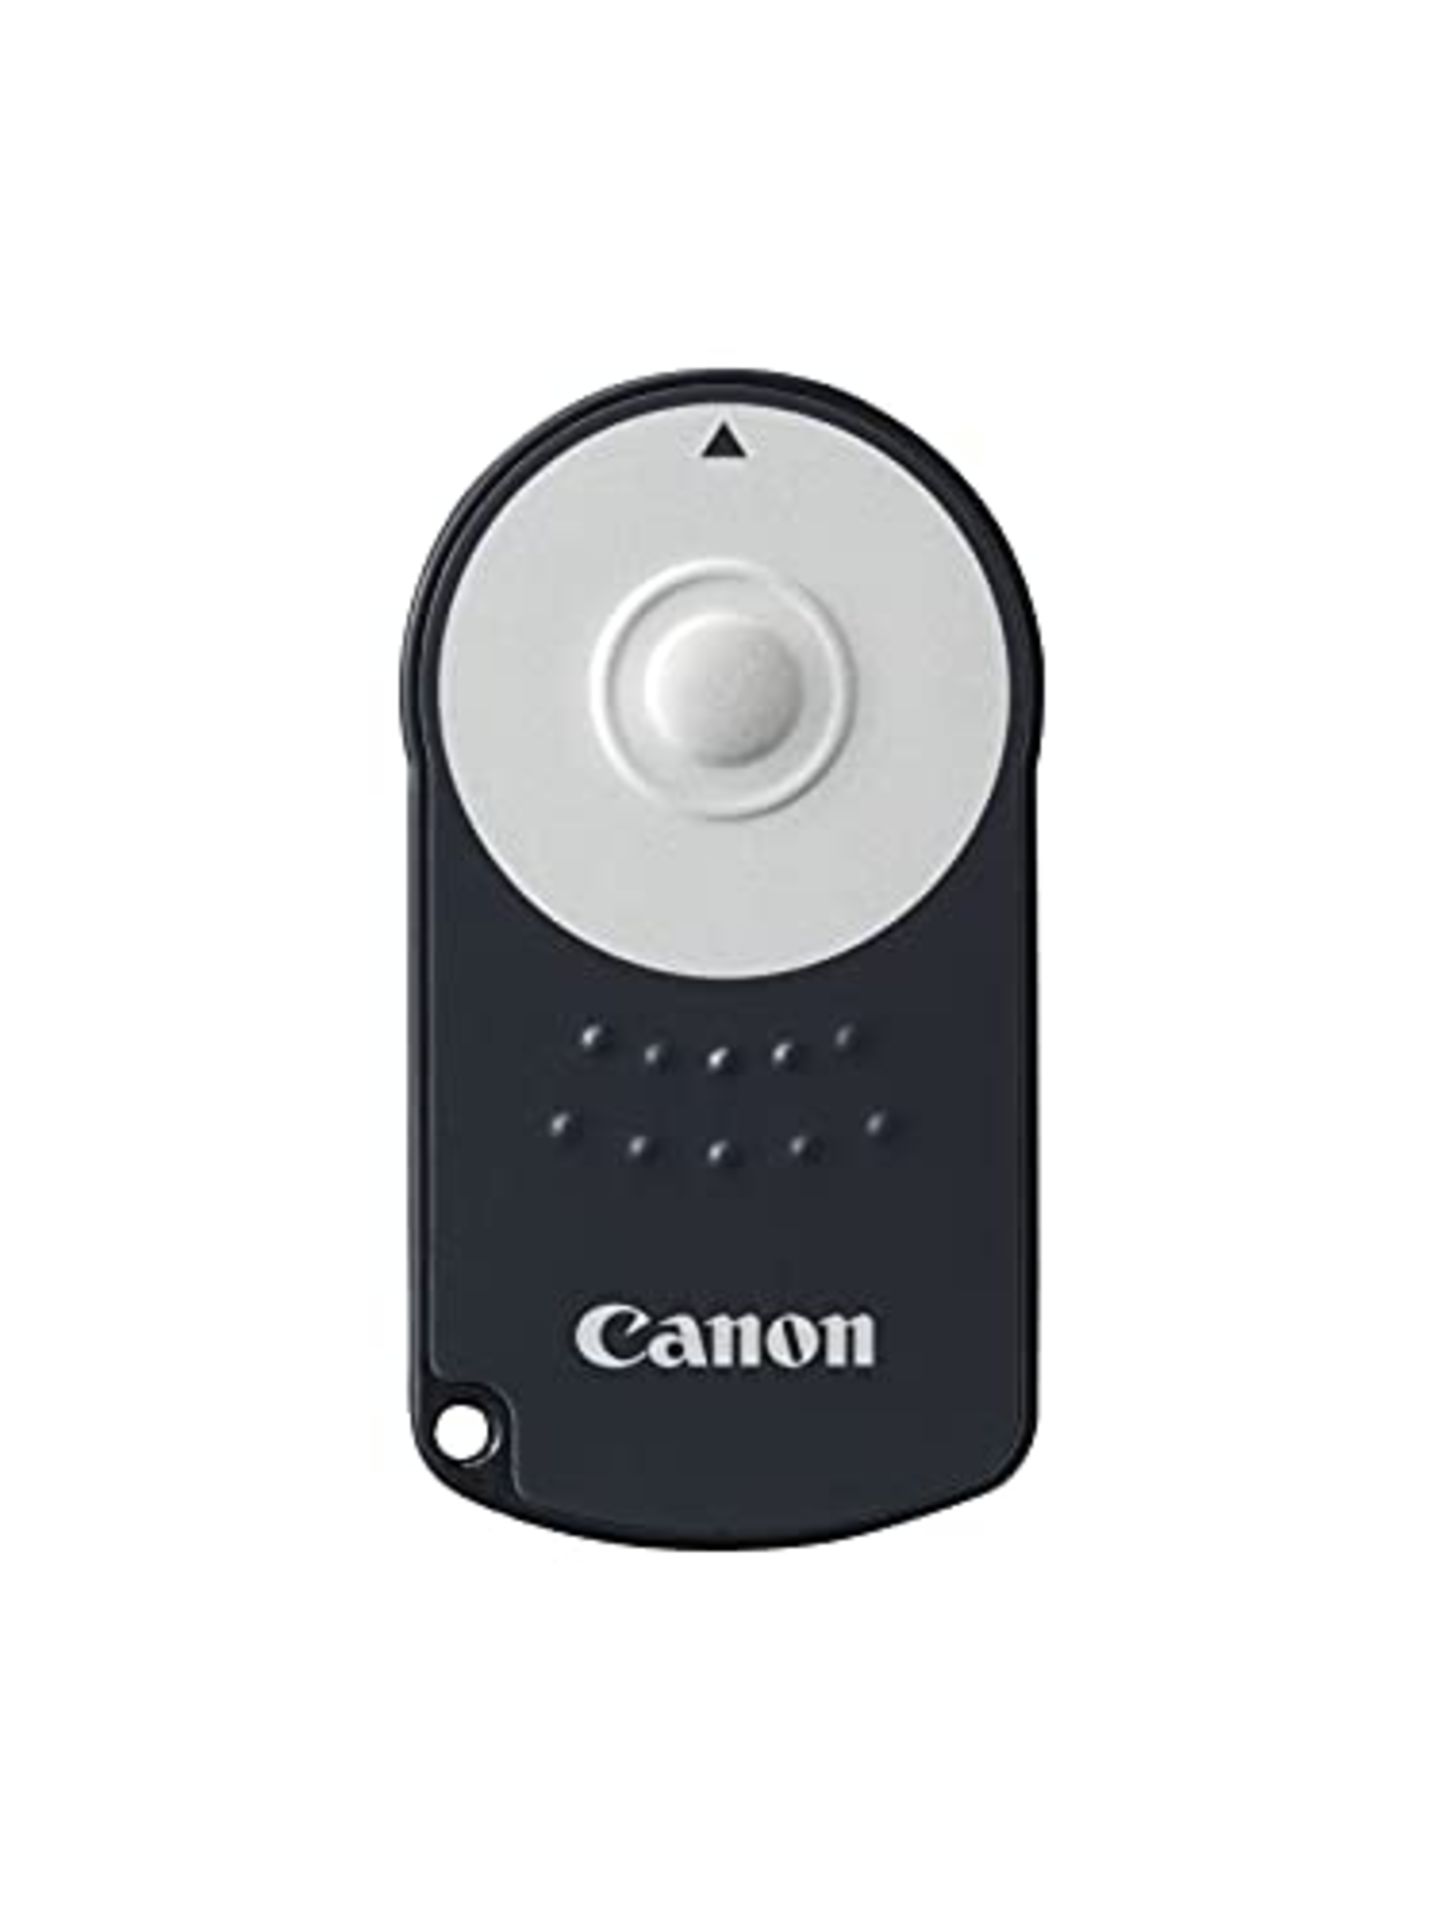 Canon RC-6 Infrared Remote Control